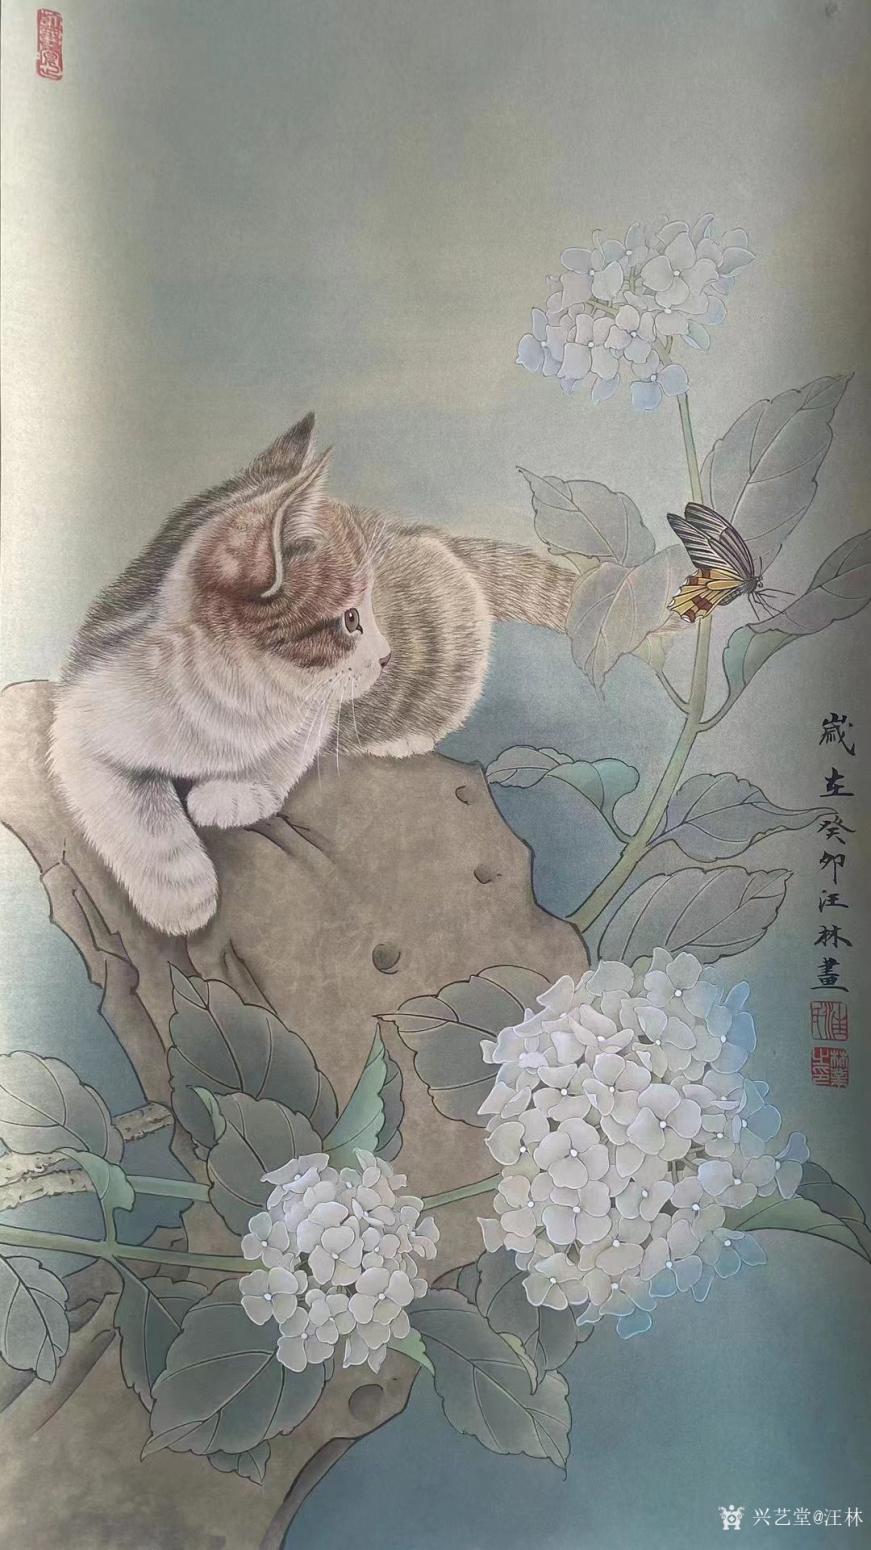 汪林国画作品《工笔-猫蝶图》